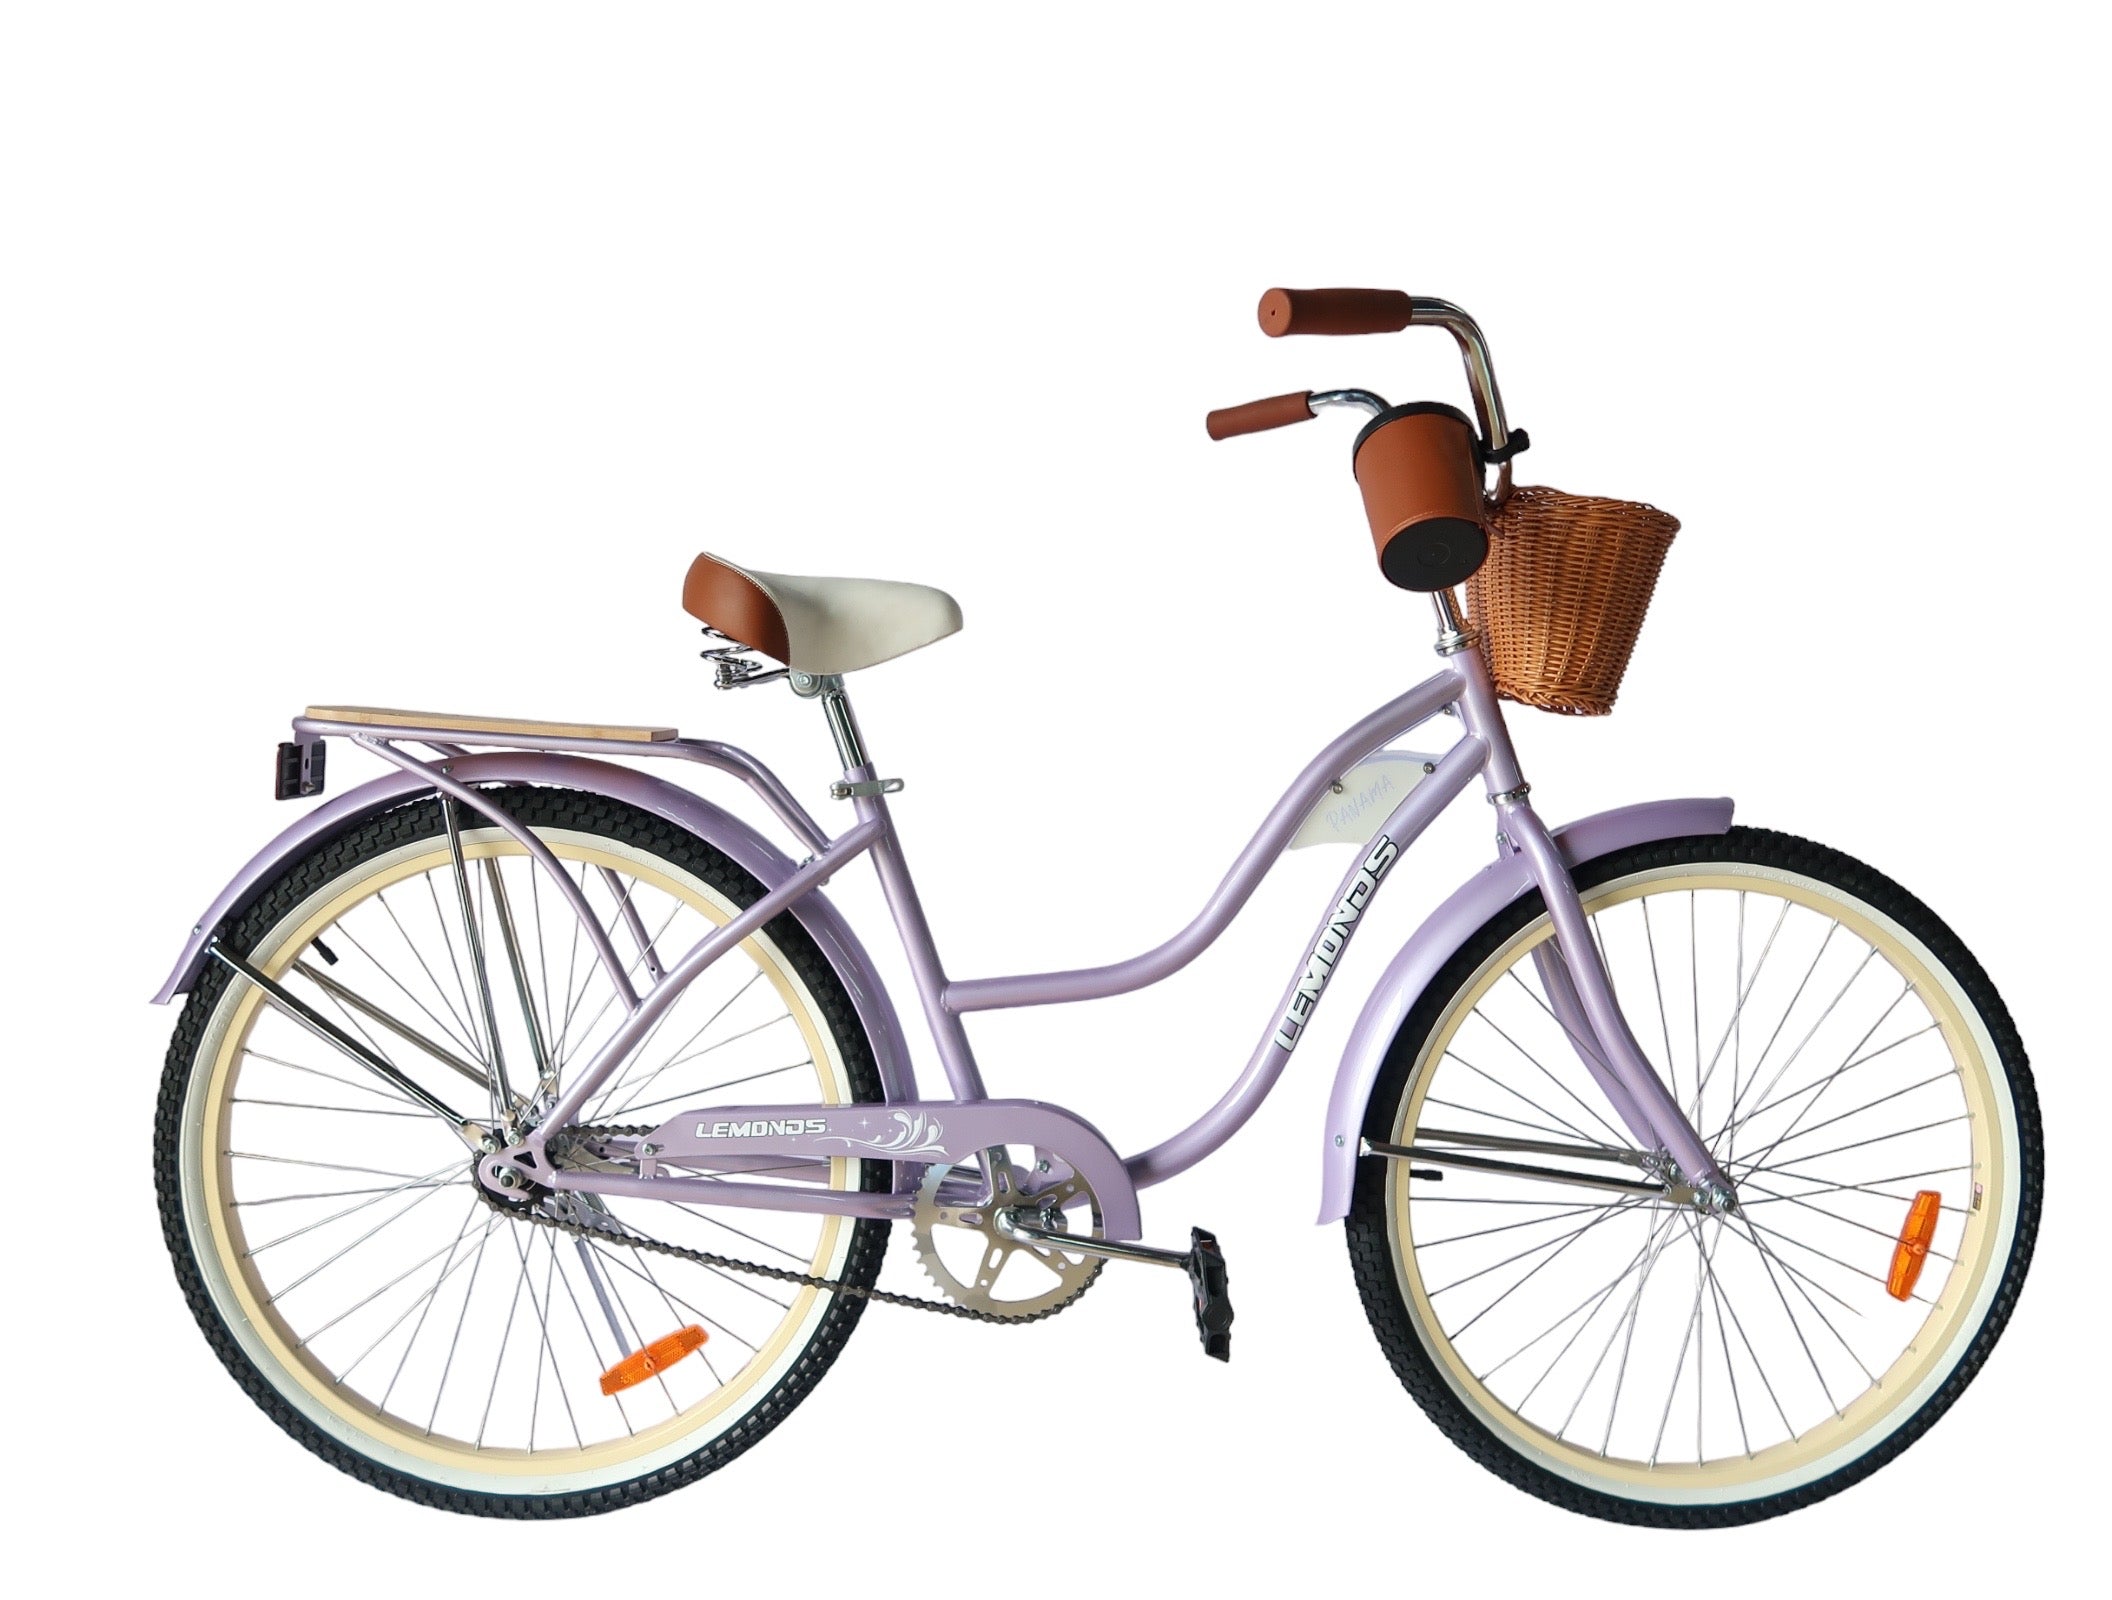 BICICLETA PASEO 26 Pulgadas | Bicicleta estilo Vintage de paseo para damas.